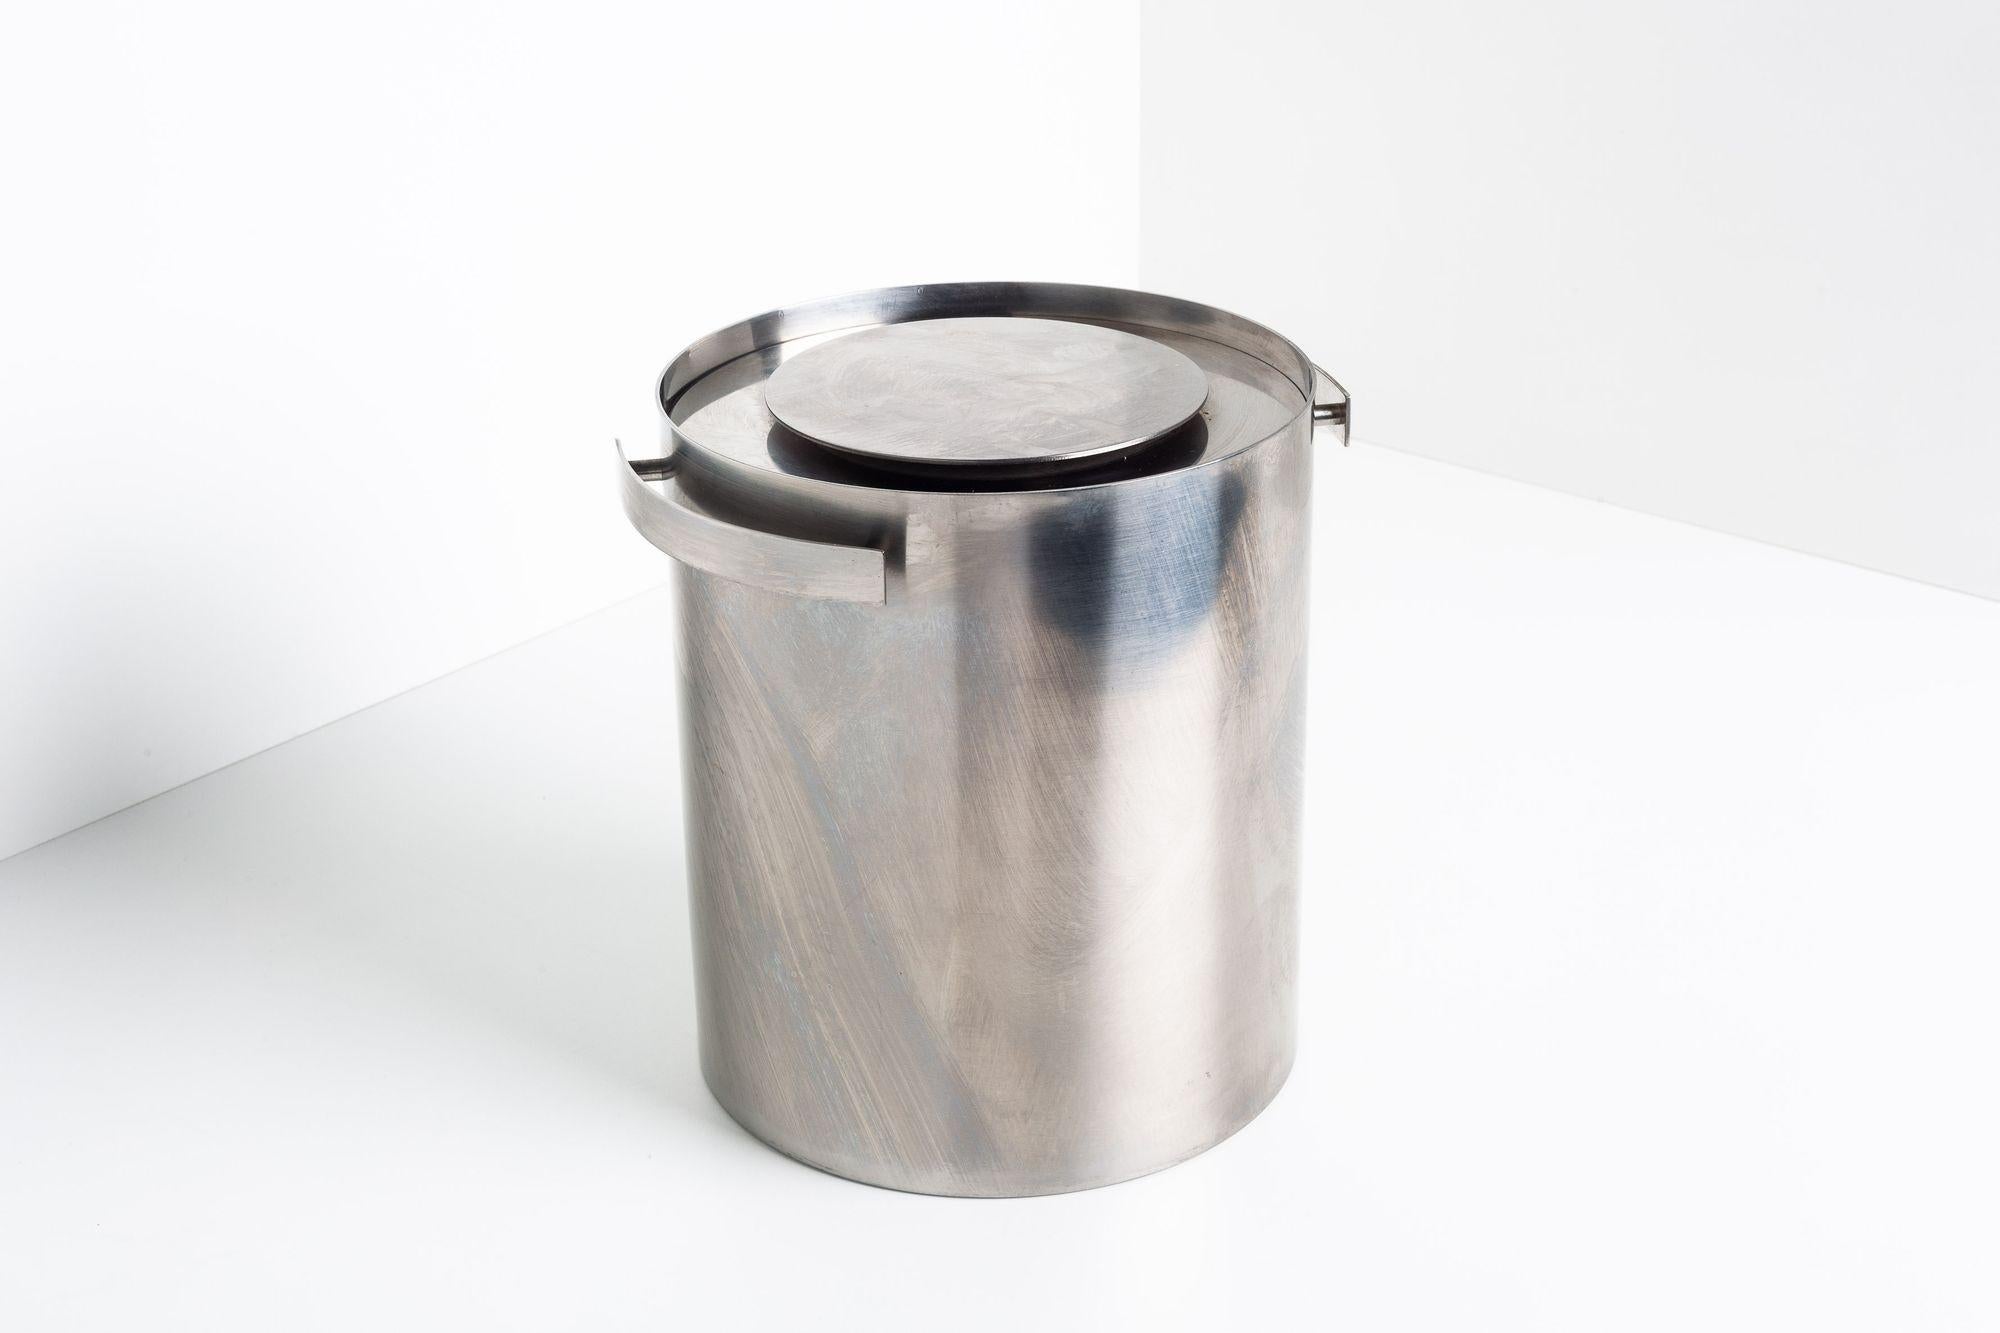 Arne Jacobsens Original AJ Weinkühler/Eiskübel wurde 1969 als Teil seiner Cylinda-Linie entworfen. Die schlichte zylindrische Form aus rostfreiem Stahl sorgt für eine markante Silhouette in jedem Interieur. Ideal zum Kühlen von Champagner oder Wein.